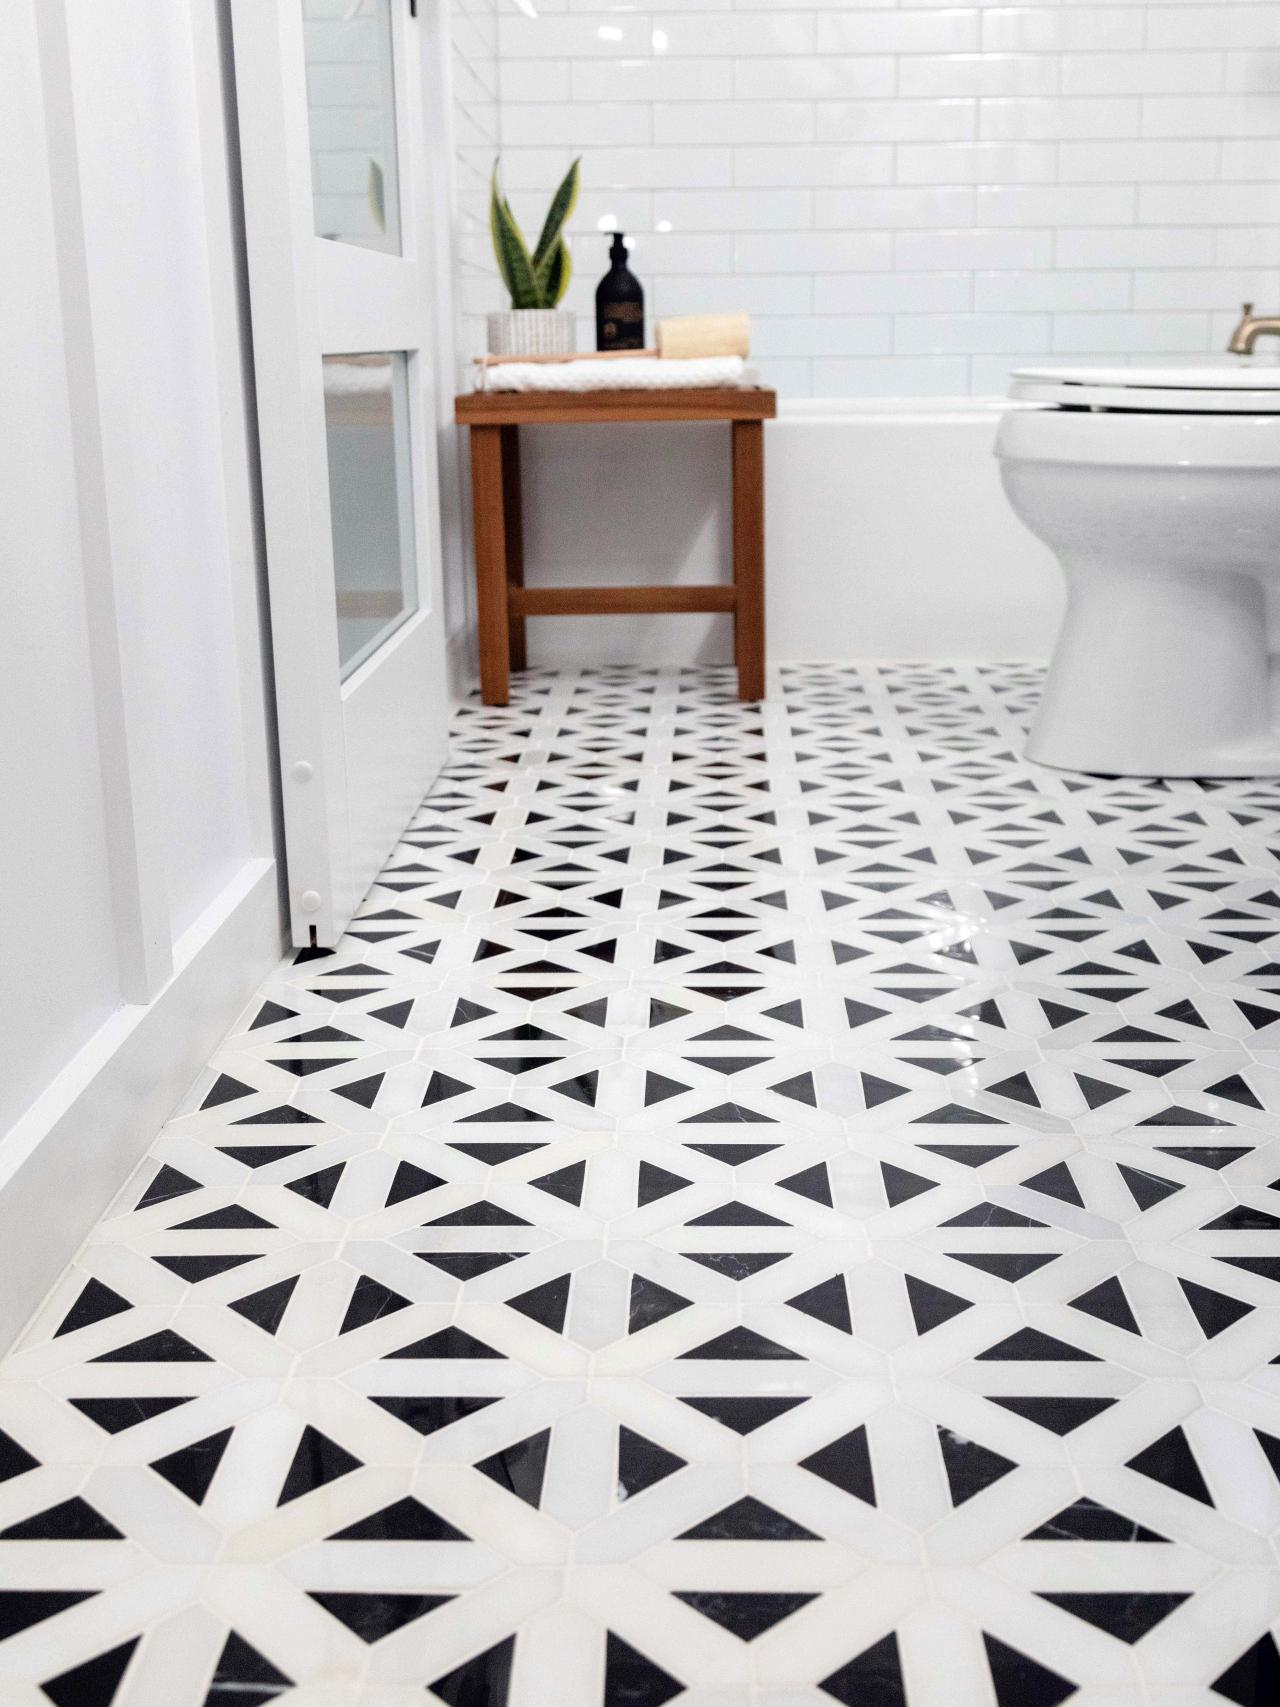 How To Lay A Tile Floor, How To Lay Ceramic Tile On A Bathroom Floor